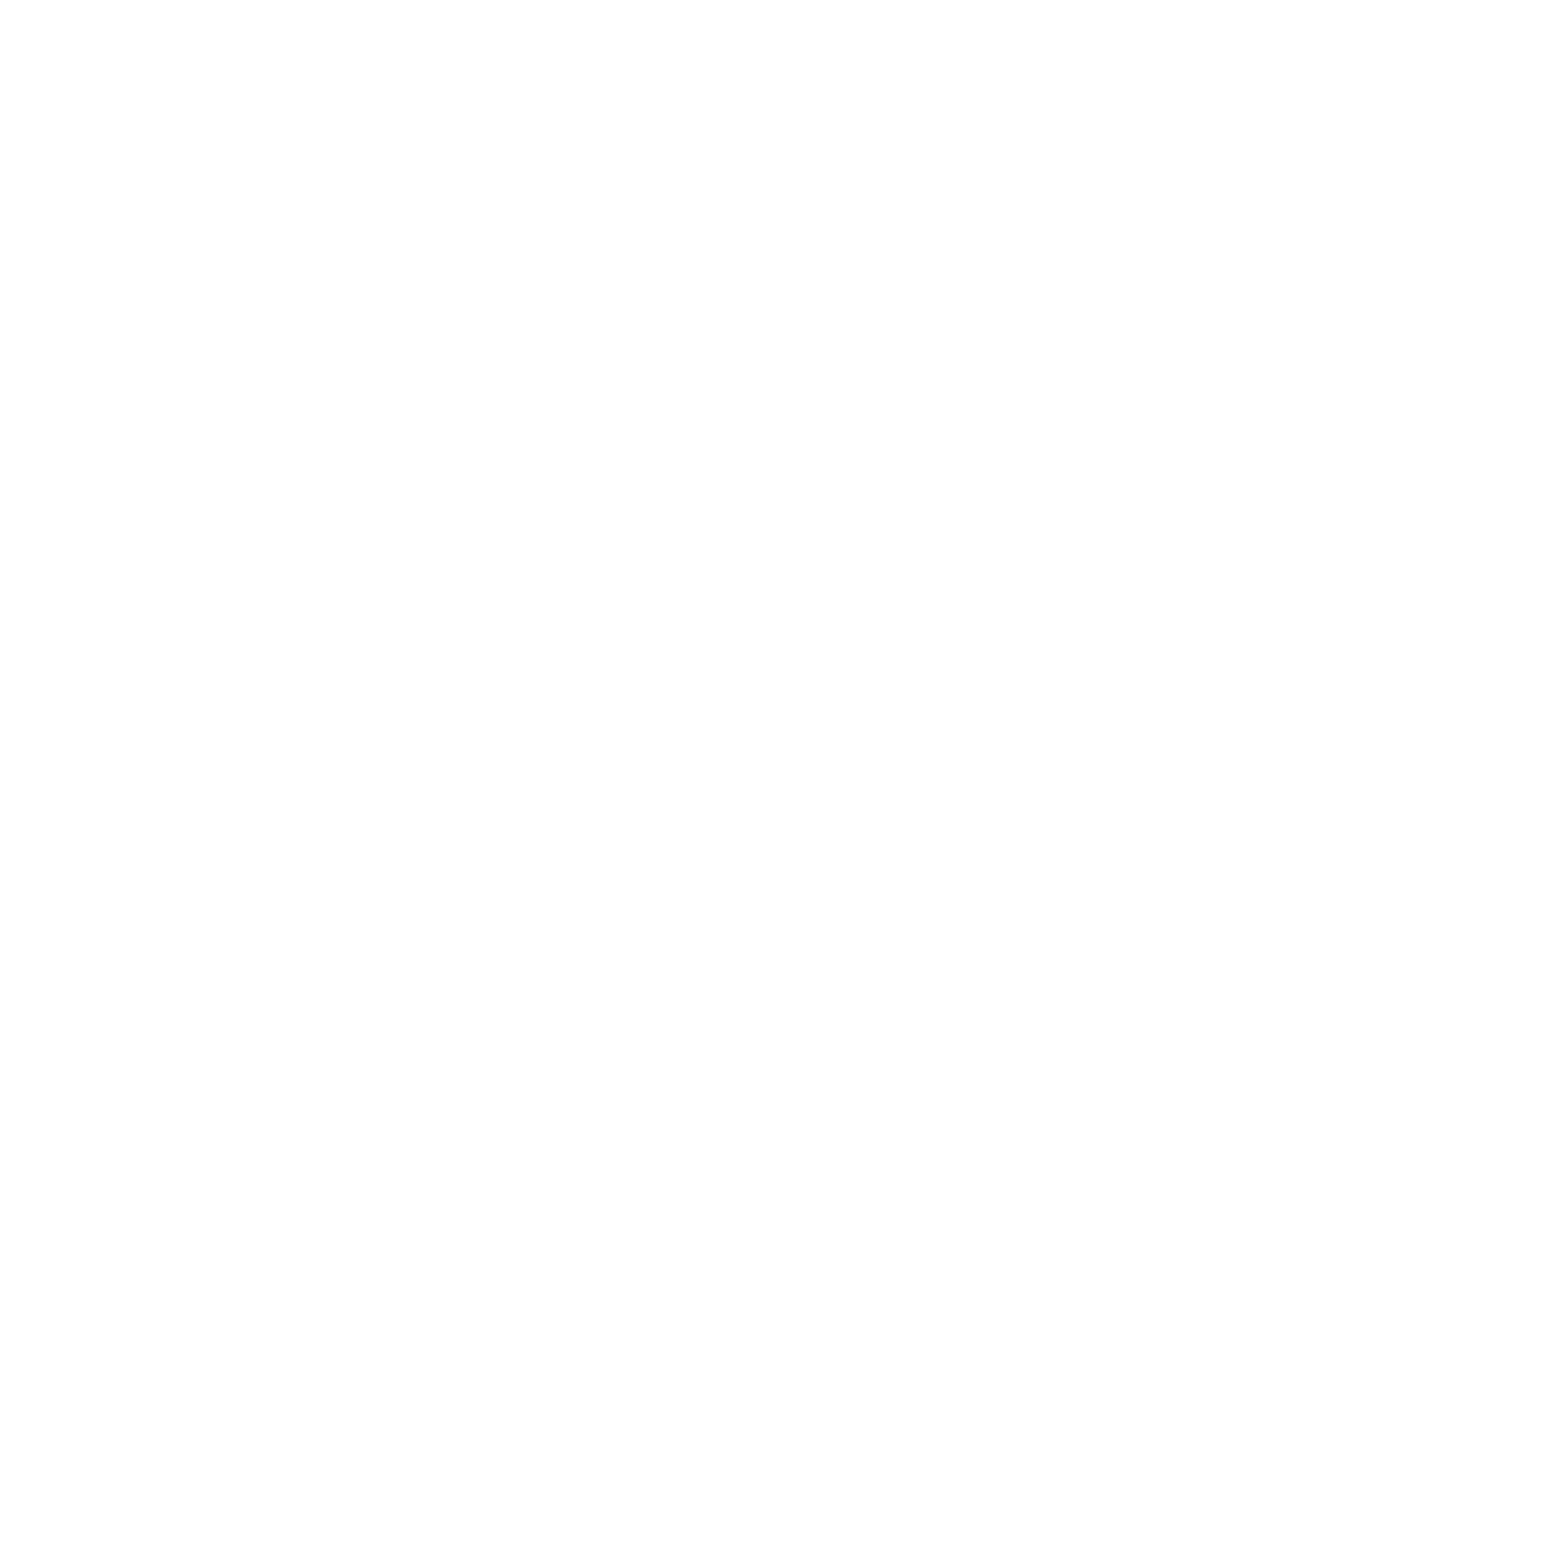 MDxHealth logo for dark backgrounds (transparent PNG)